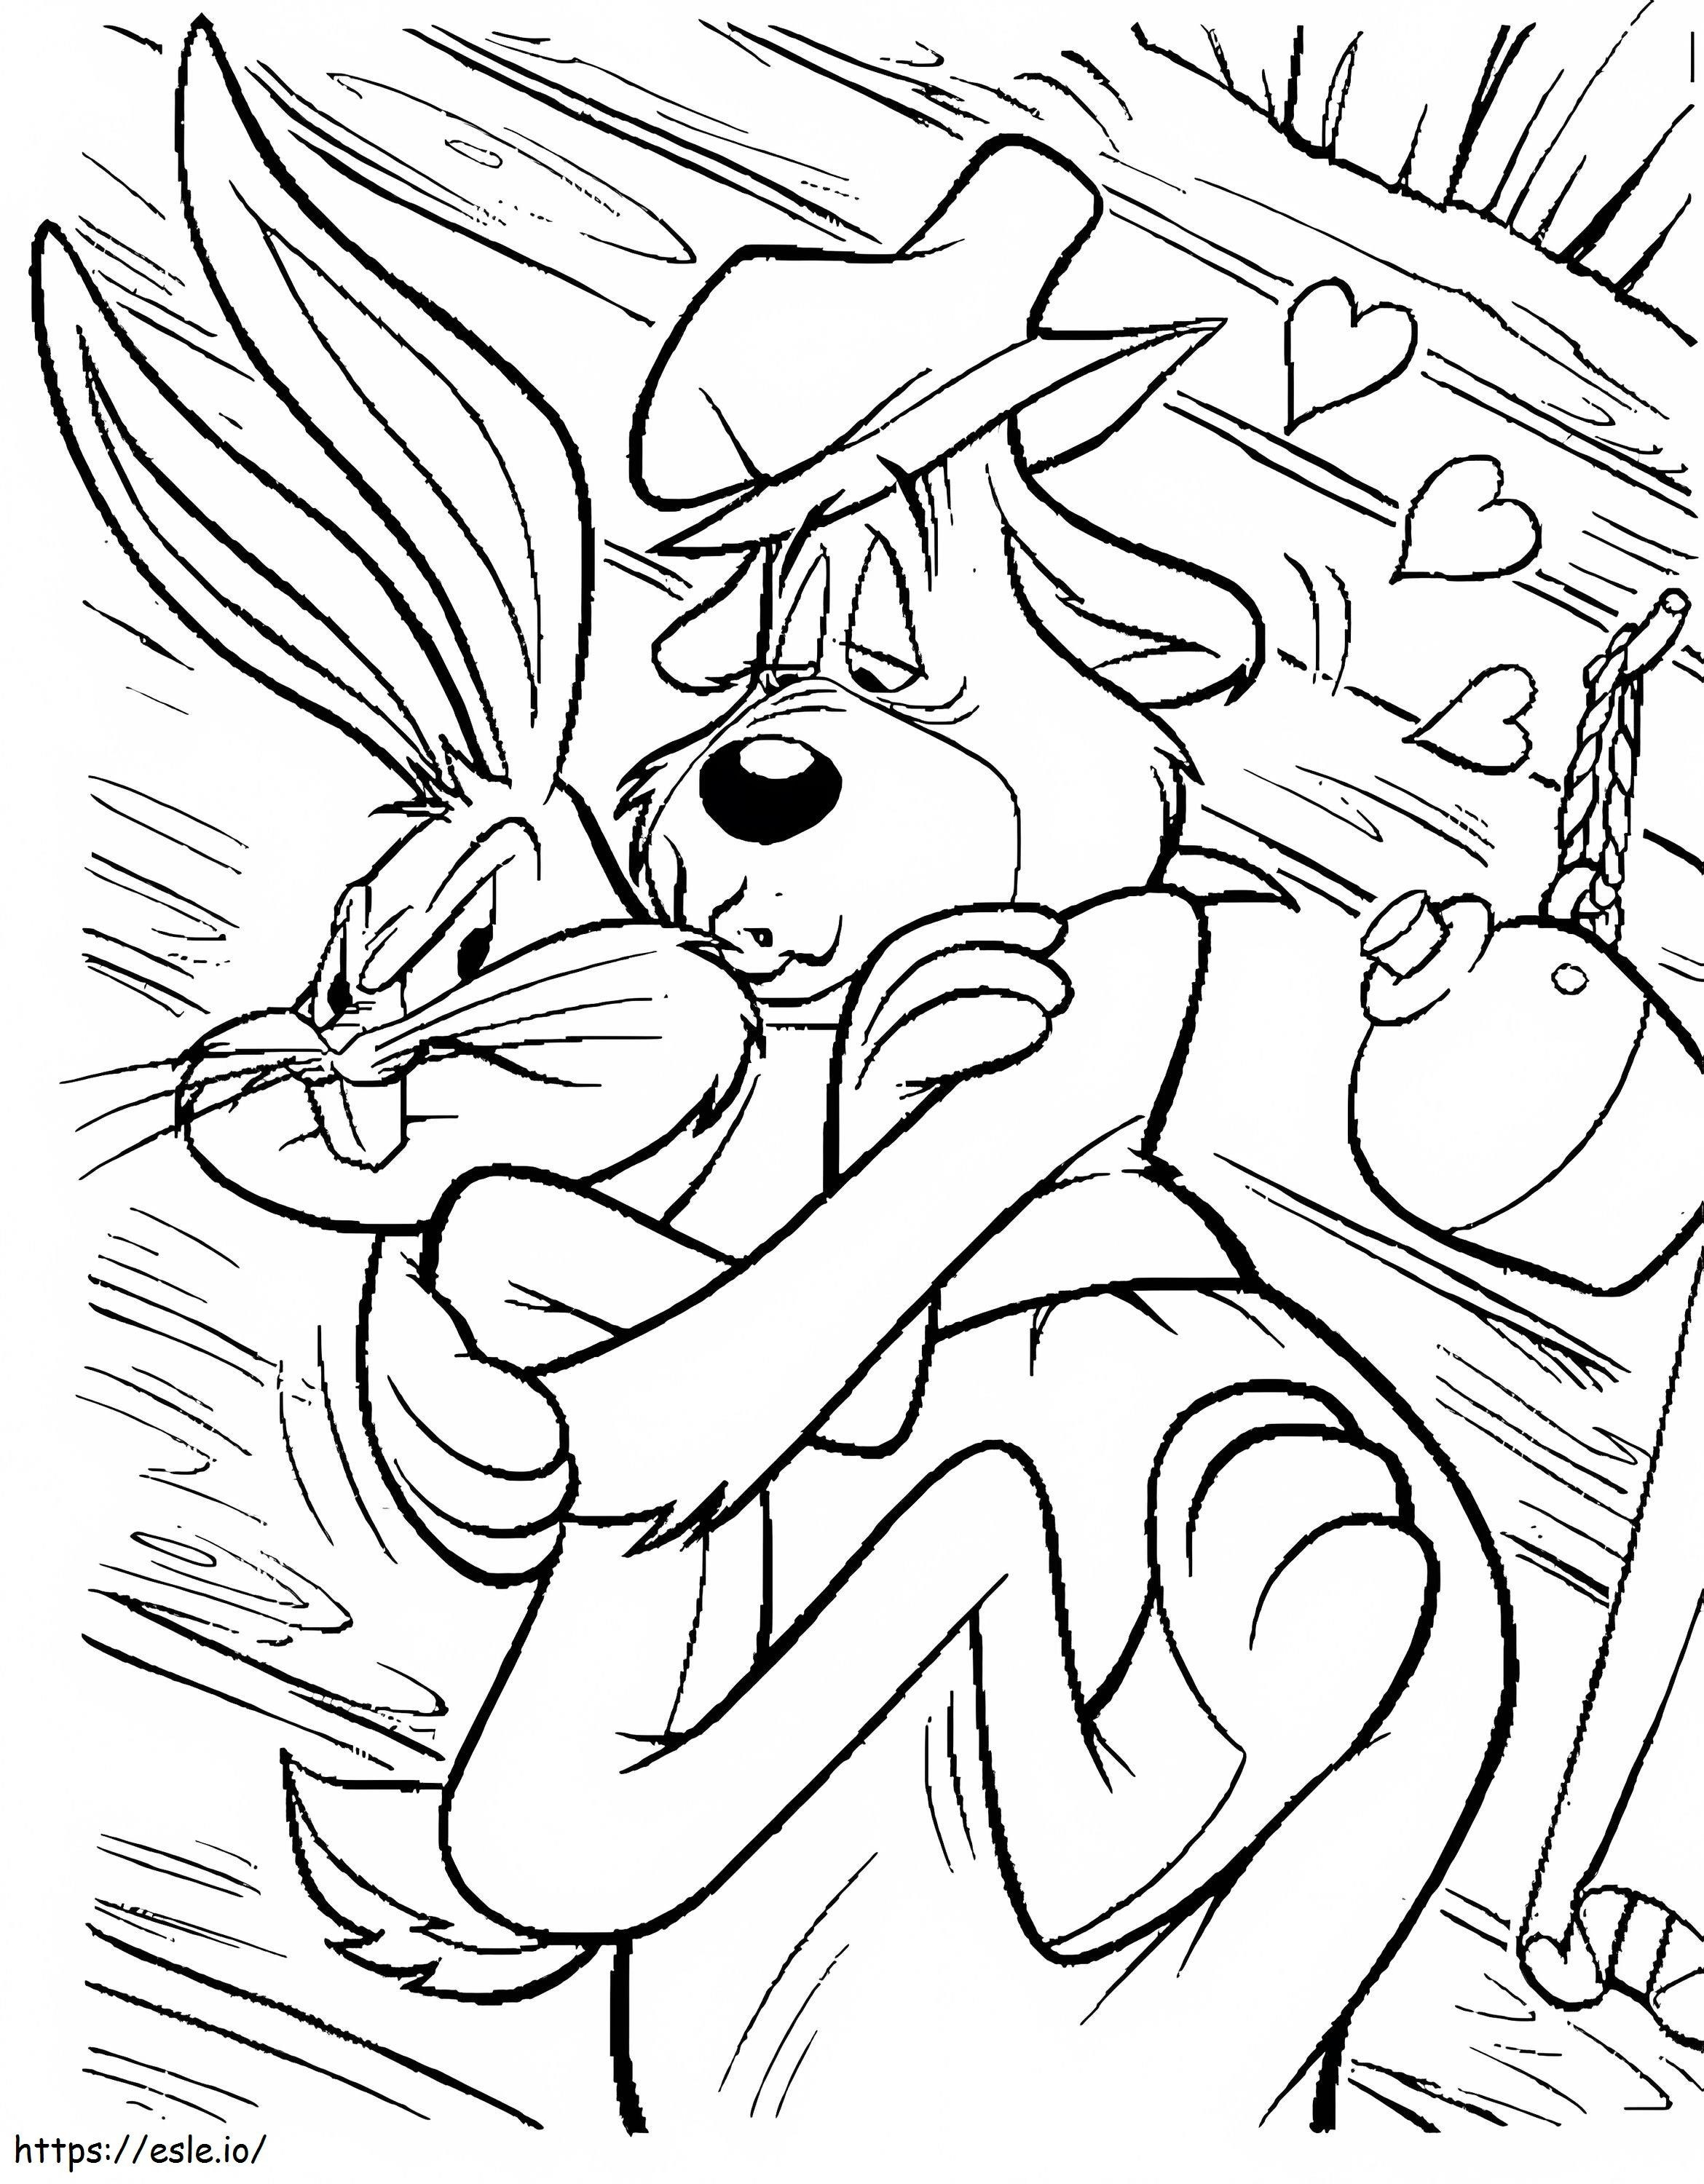 Bonito Bugs Bunny coloring page